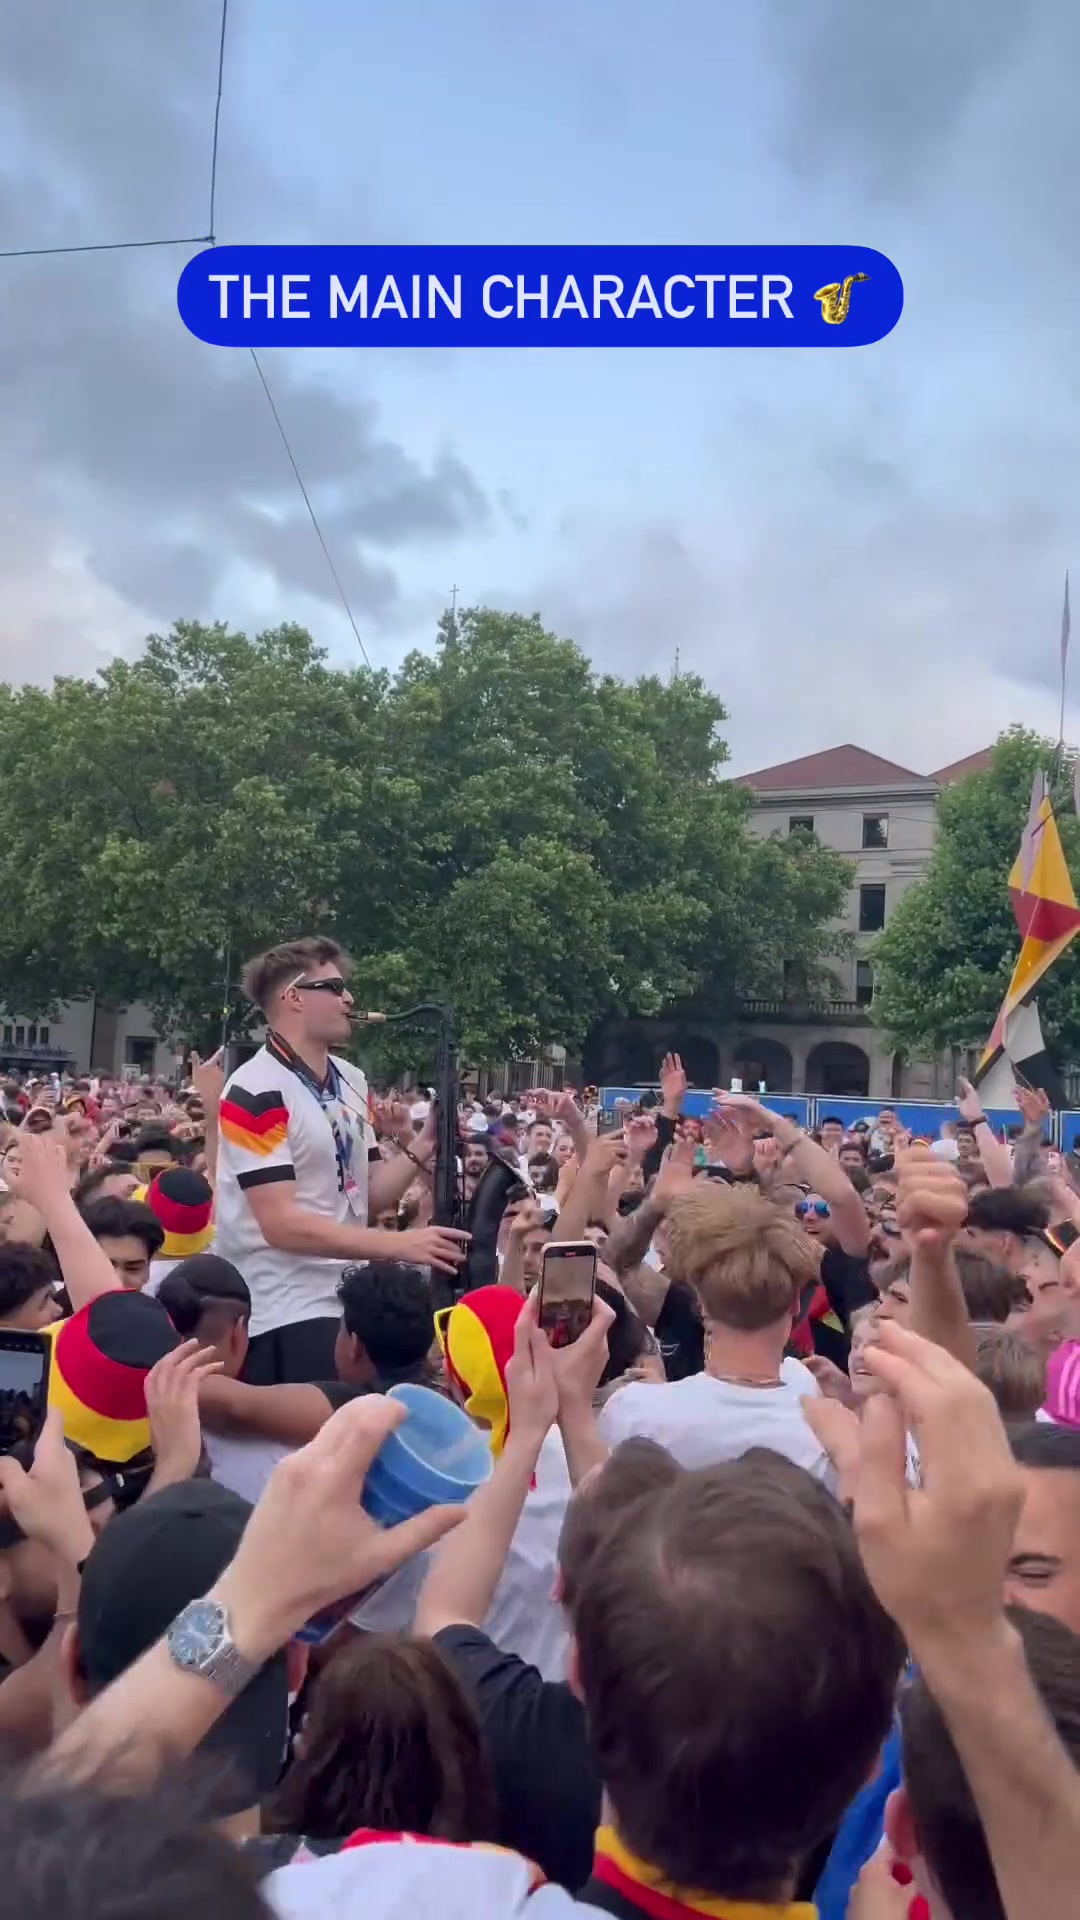 嗨爆！德国球迷吹萨克斯带动千百人大蹦迪